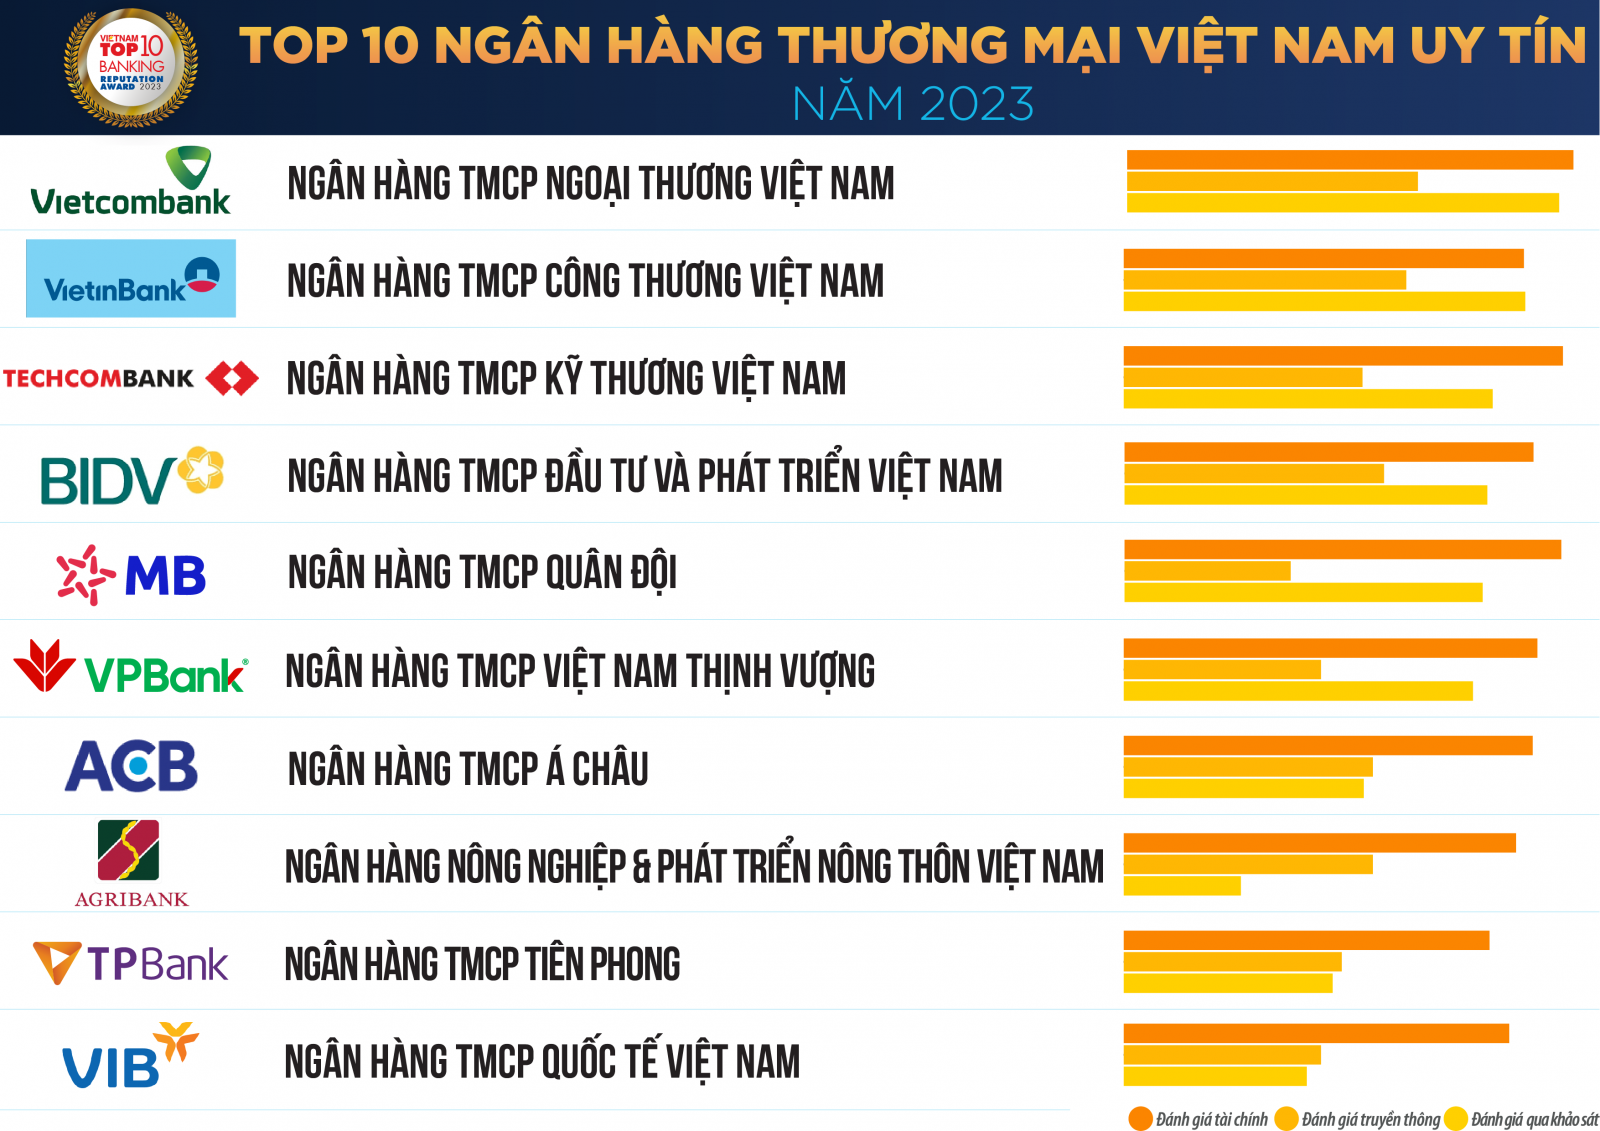 Danh sách “Top 10 ngân hàng thương mại Việt Nam uy tín năm 2023” (nguồn: Vietnam Report)